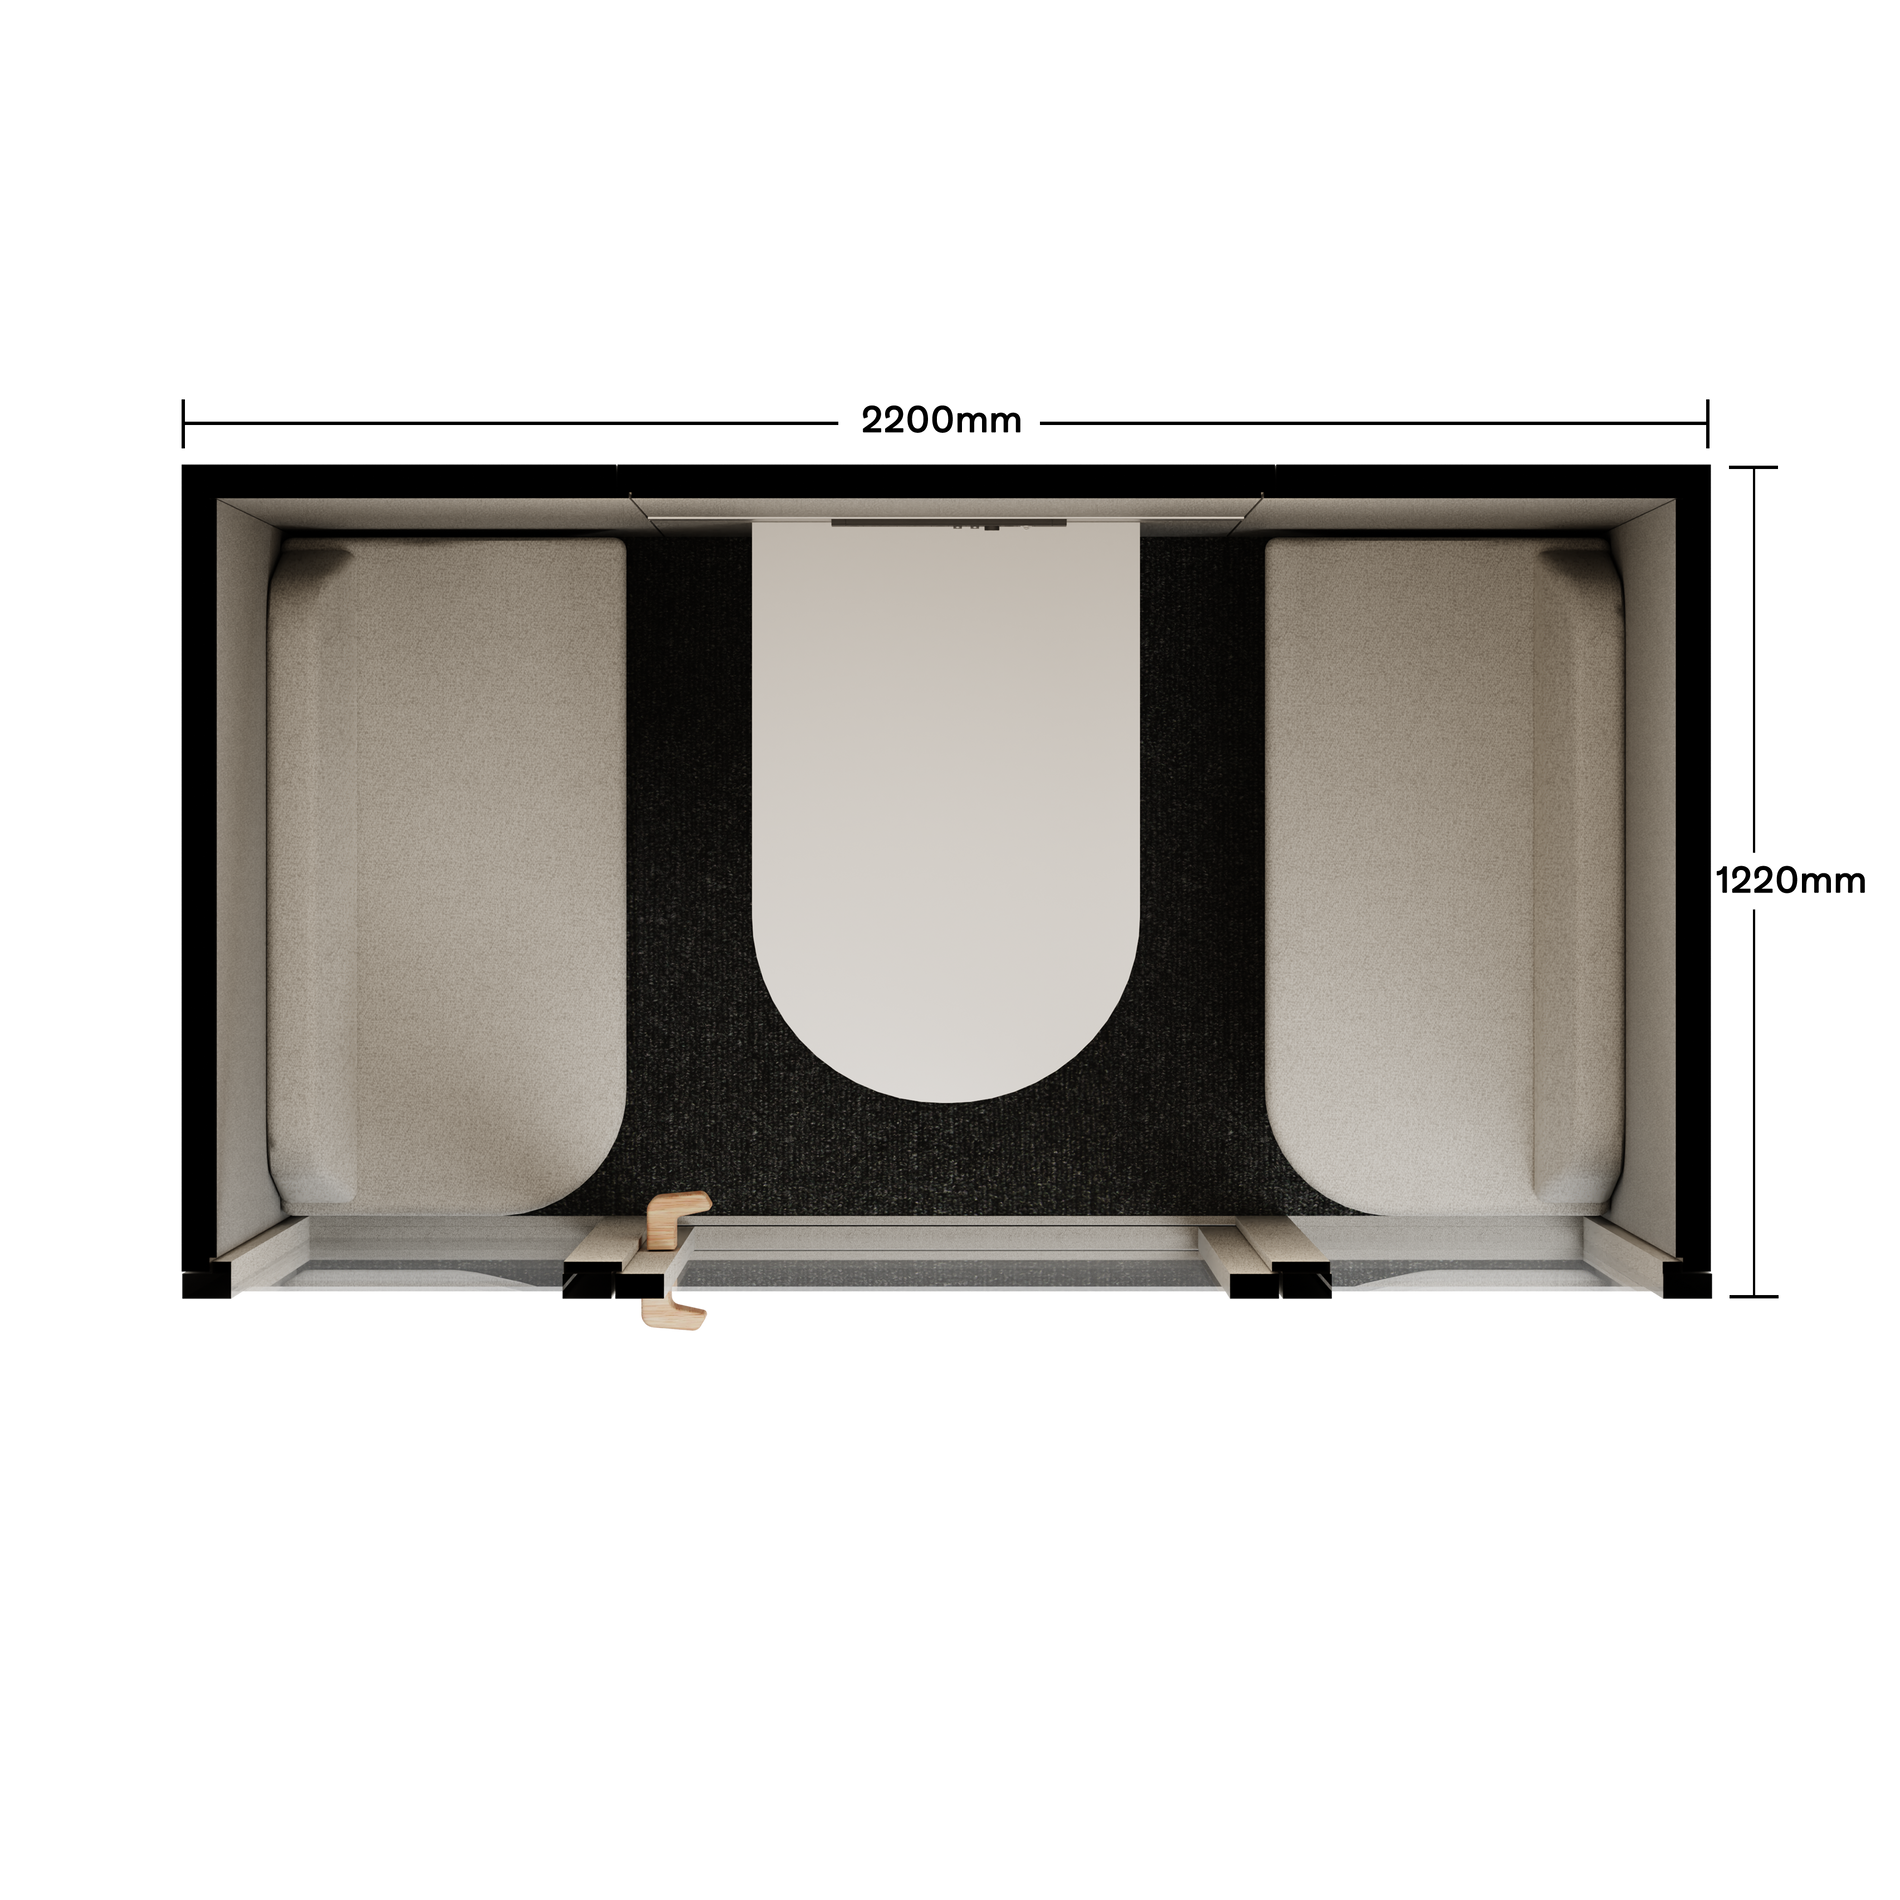 Folio Caseta de Oficina para 2-4 PersonasFolio Pebble Grey / Furniture As Per Images